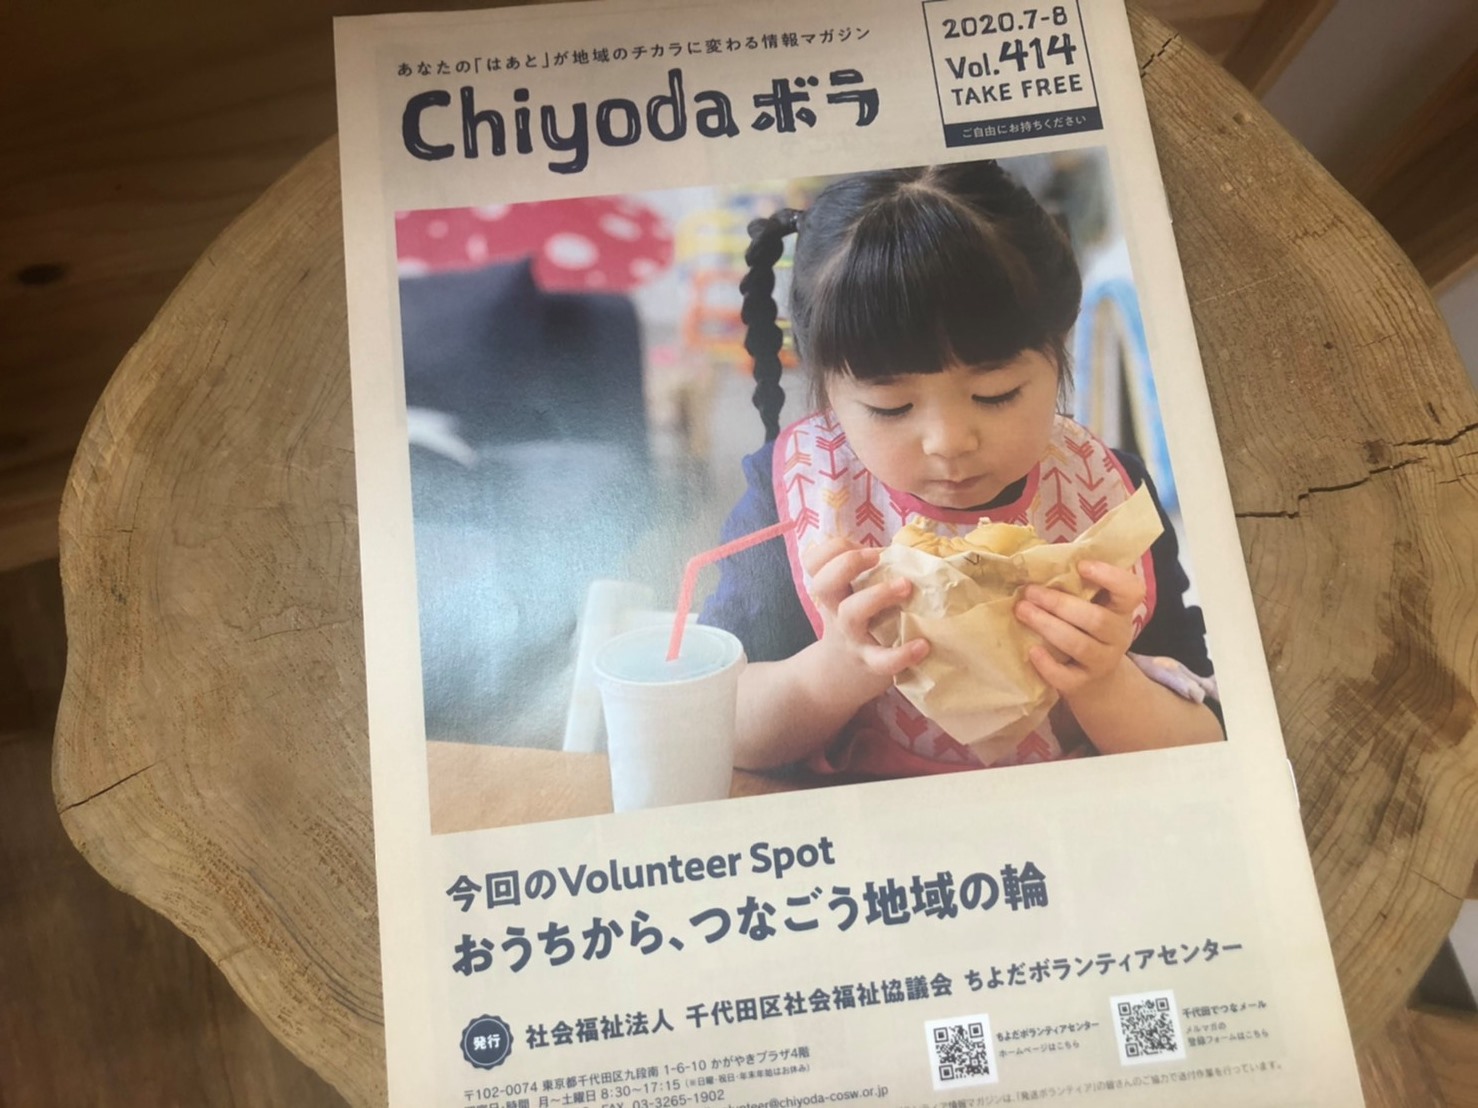 千代田区社会福祉協議会 「chiyodaボラ」にて掲載いただきました!